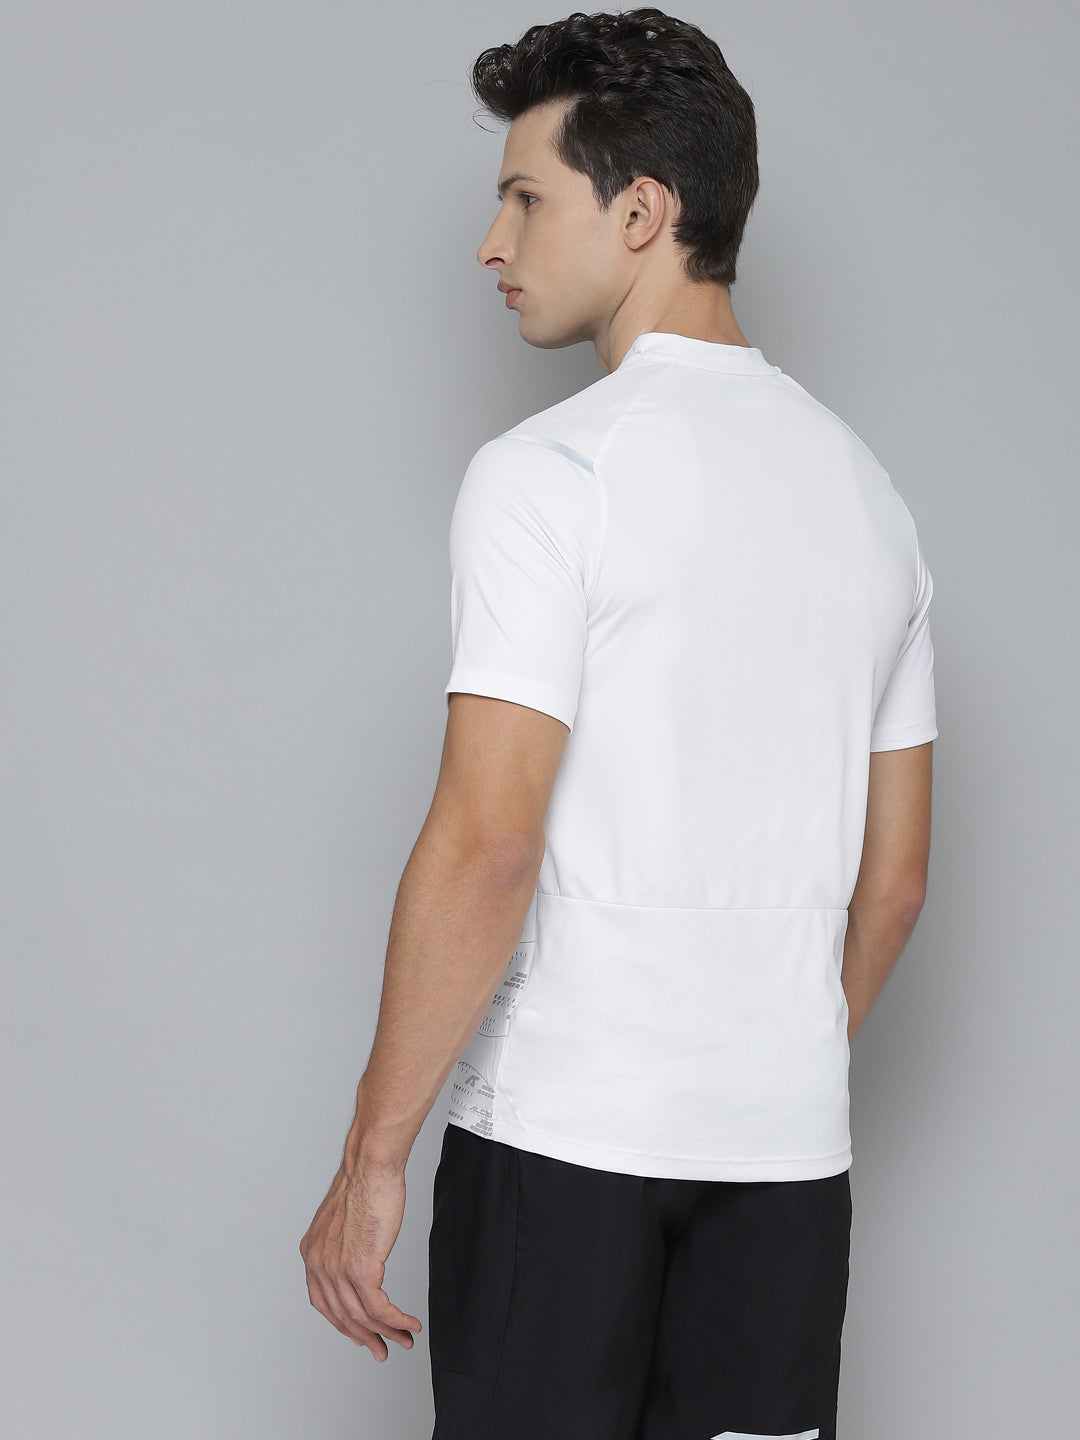 Alcis Men Self Design White Tshirts